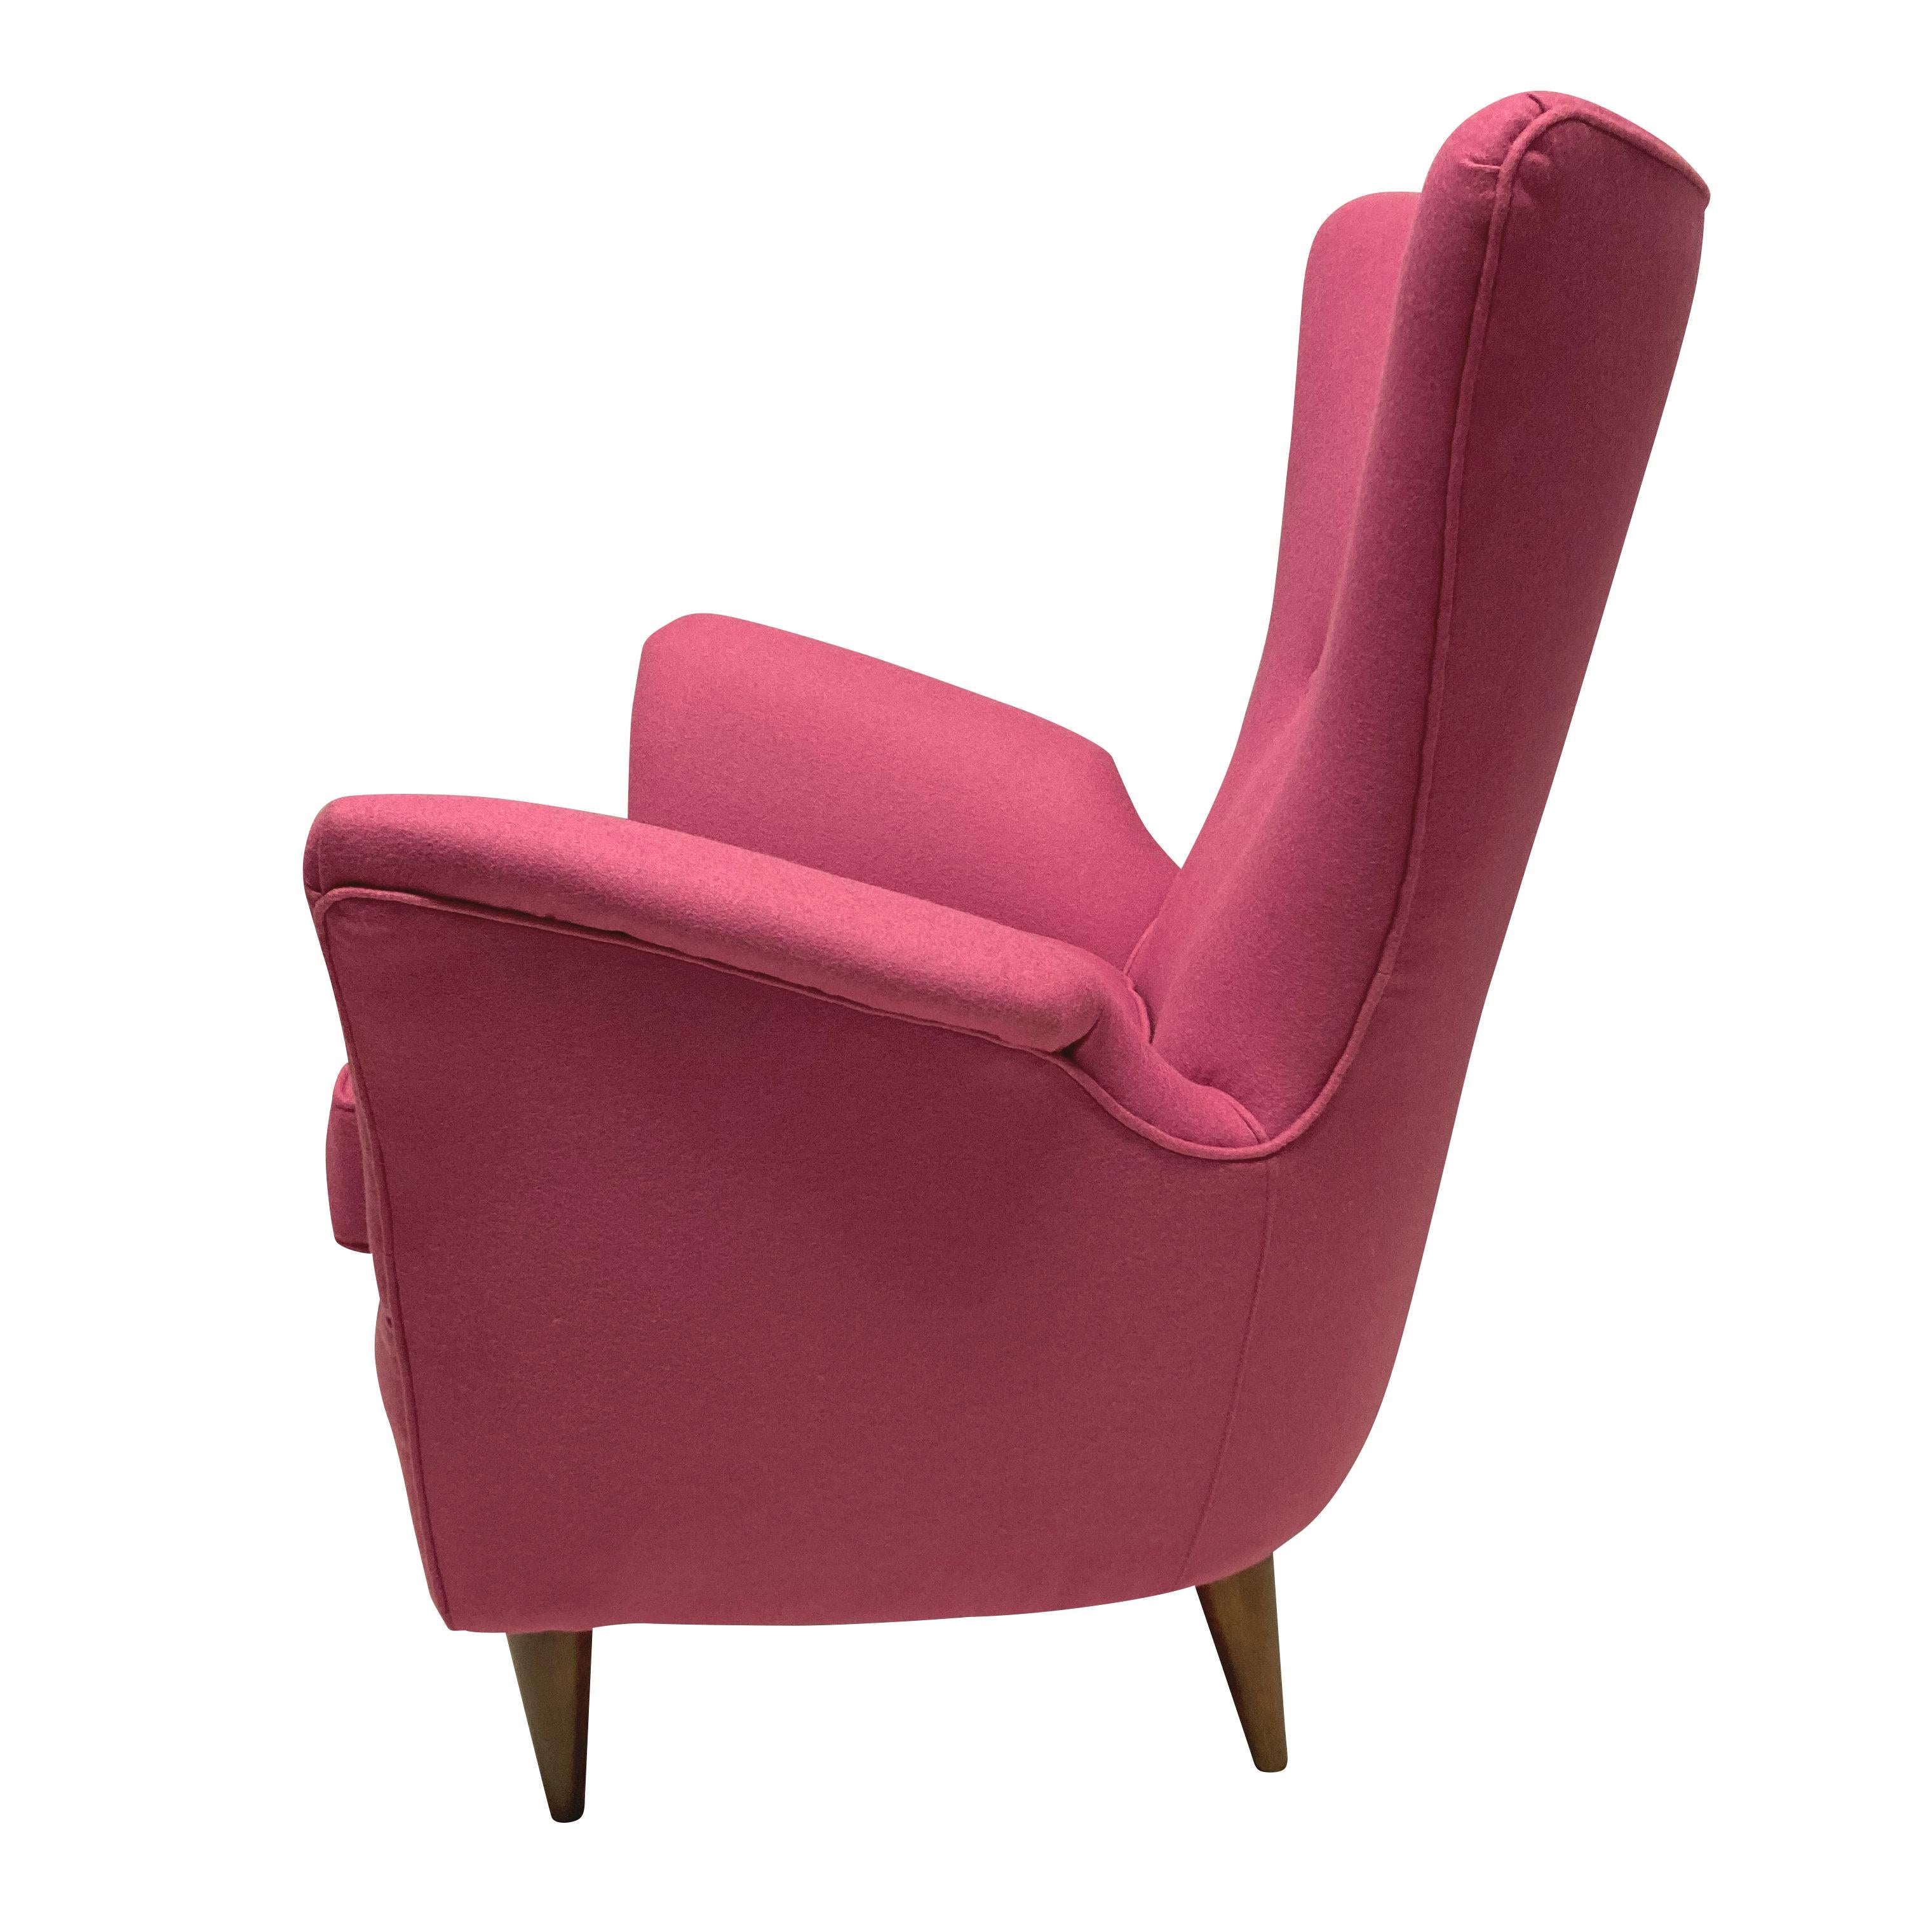 Ein Paar stilvolle italienische Sessel von Melchiore Bega. Mit polierten, spitz zulaufenden Beinen aus französischem Nussbaum und neu gepolstert mit rosa Wolle.